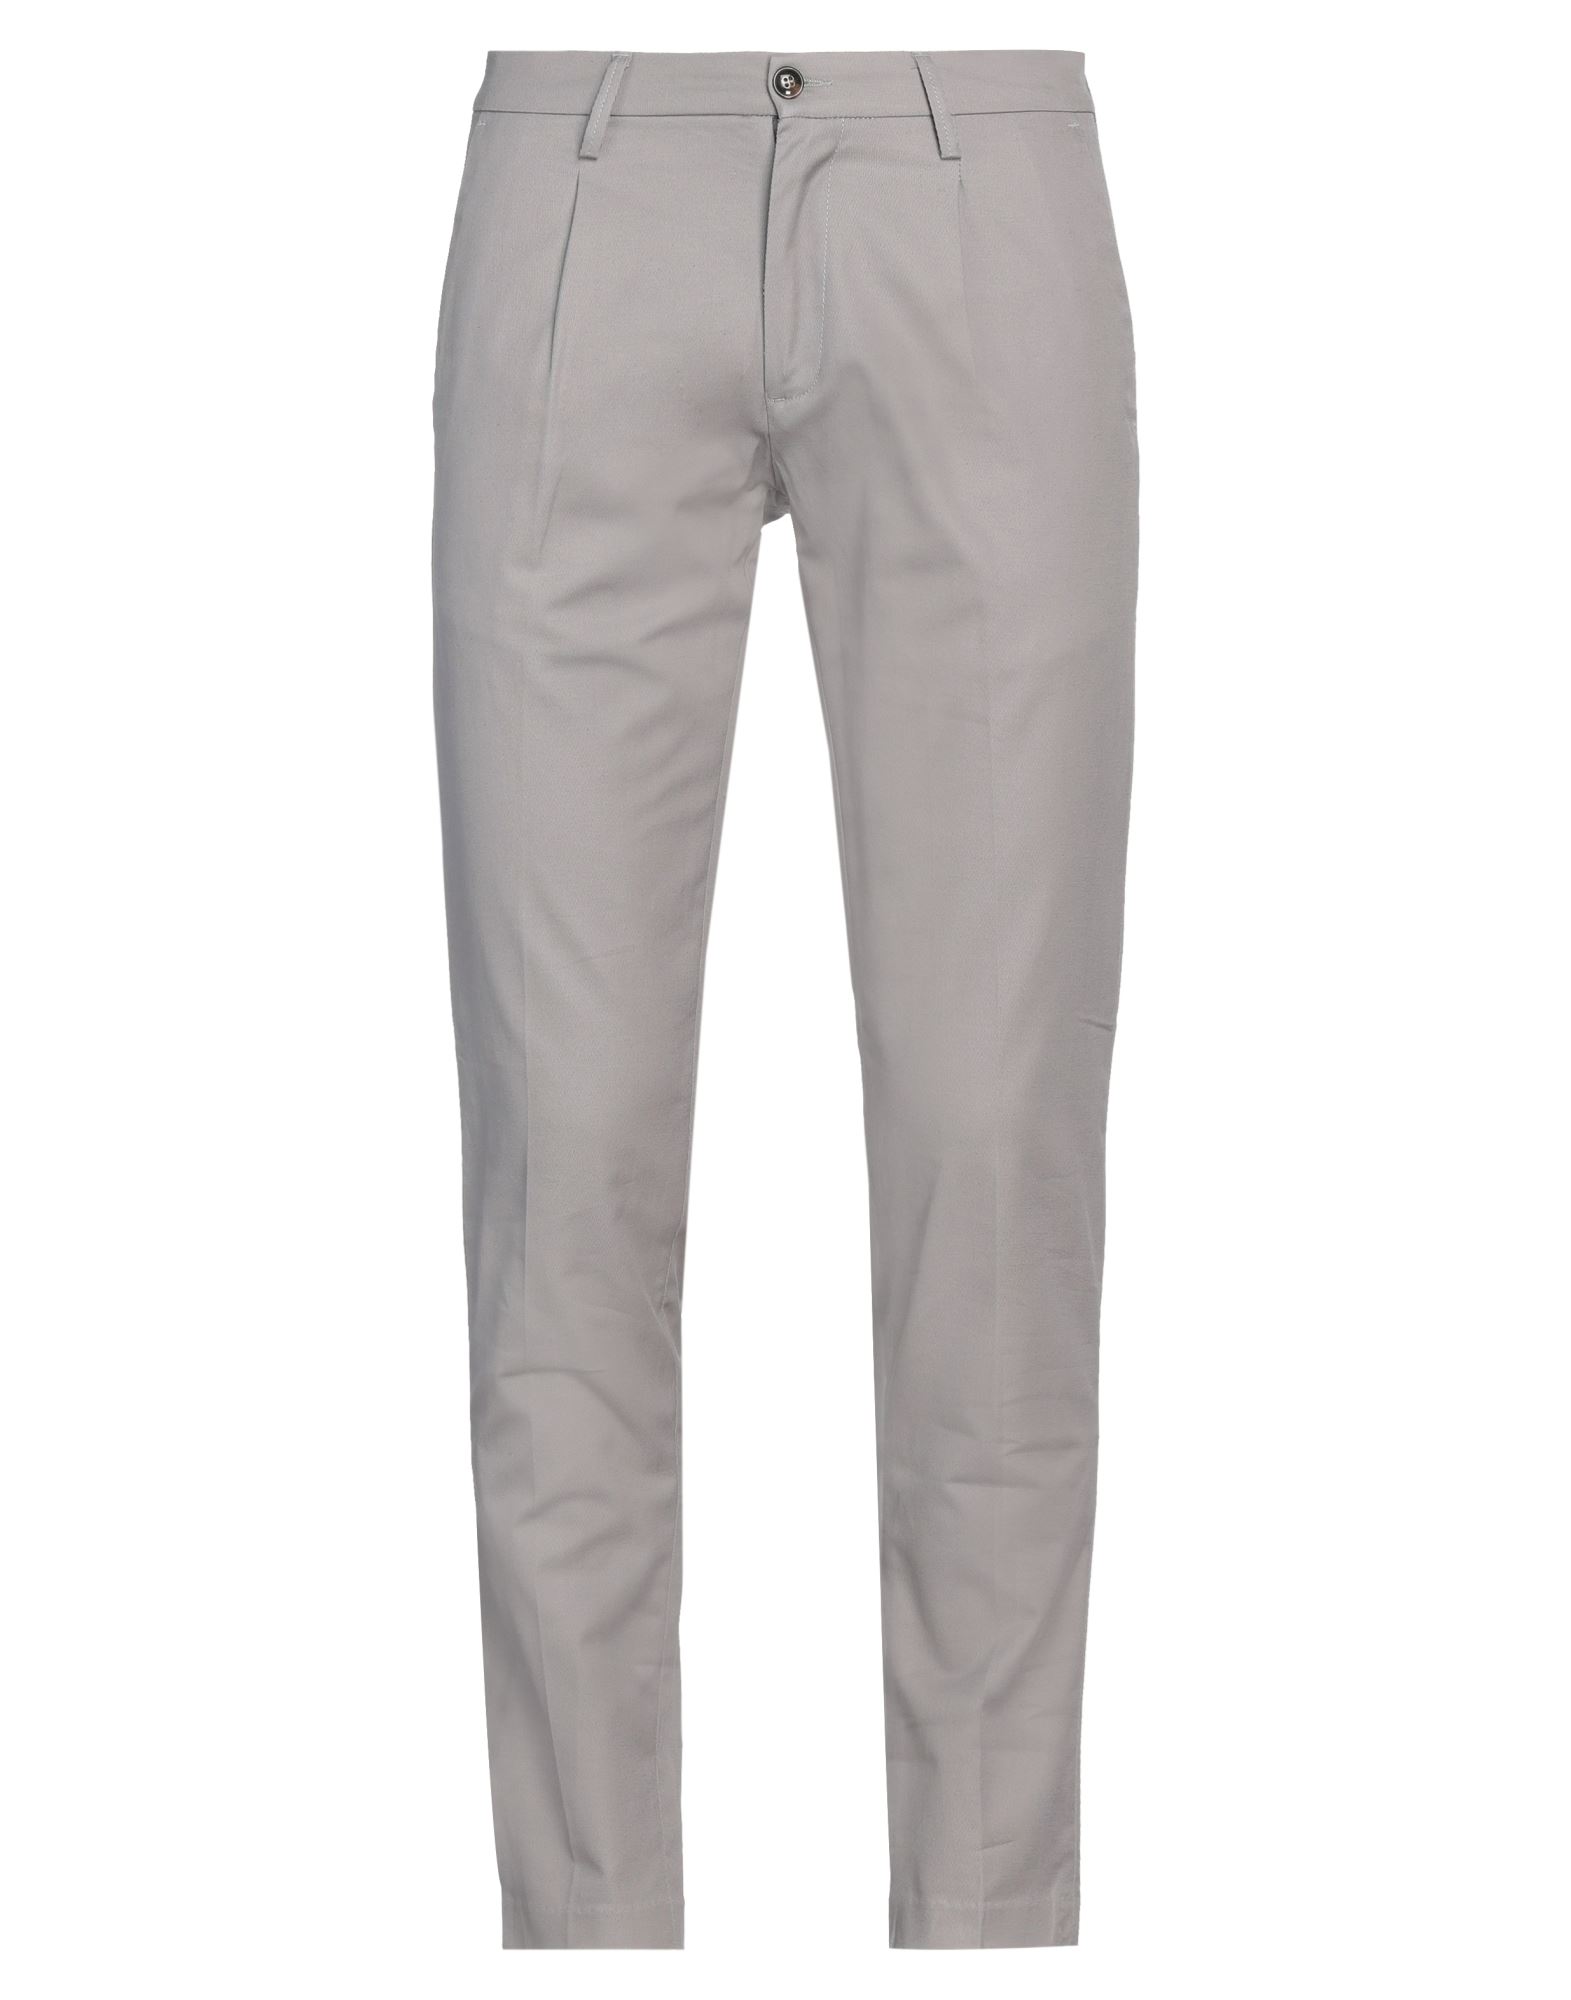 Shop Liu •jo Man Man Pants Grey Size 26 Cotton, Linen, Elastane